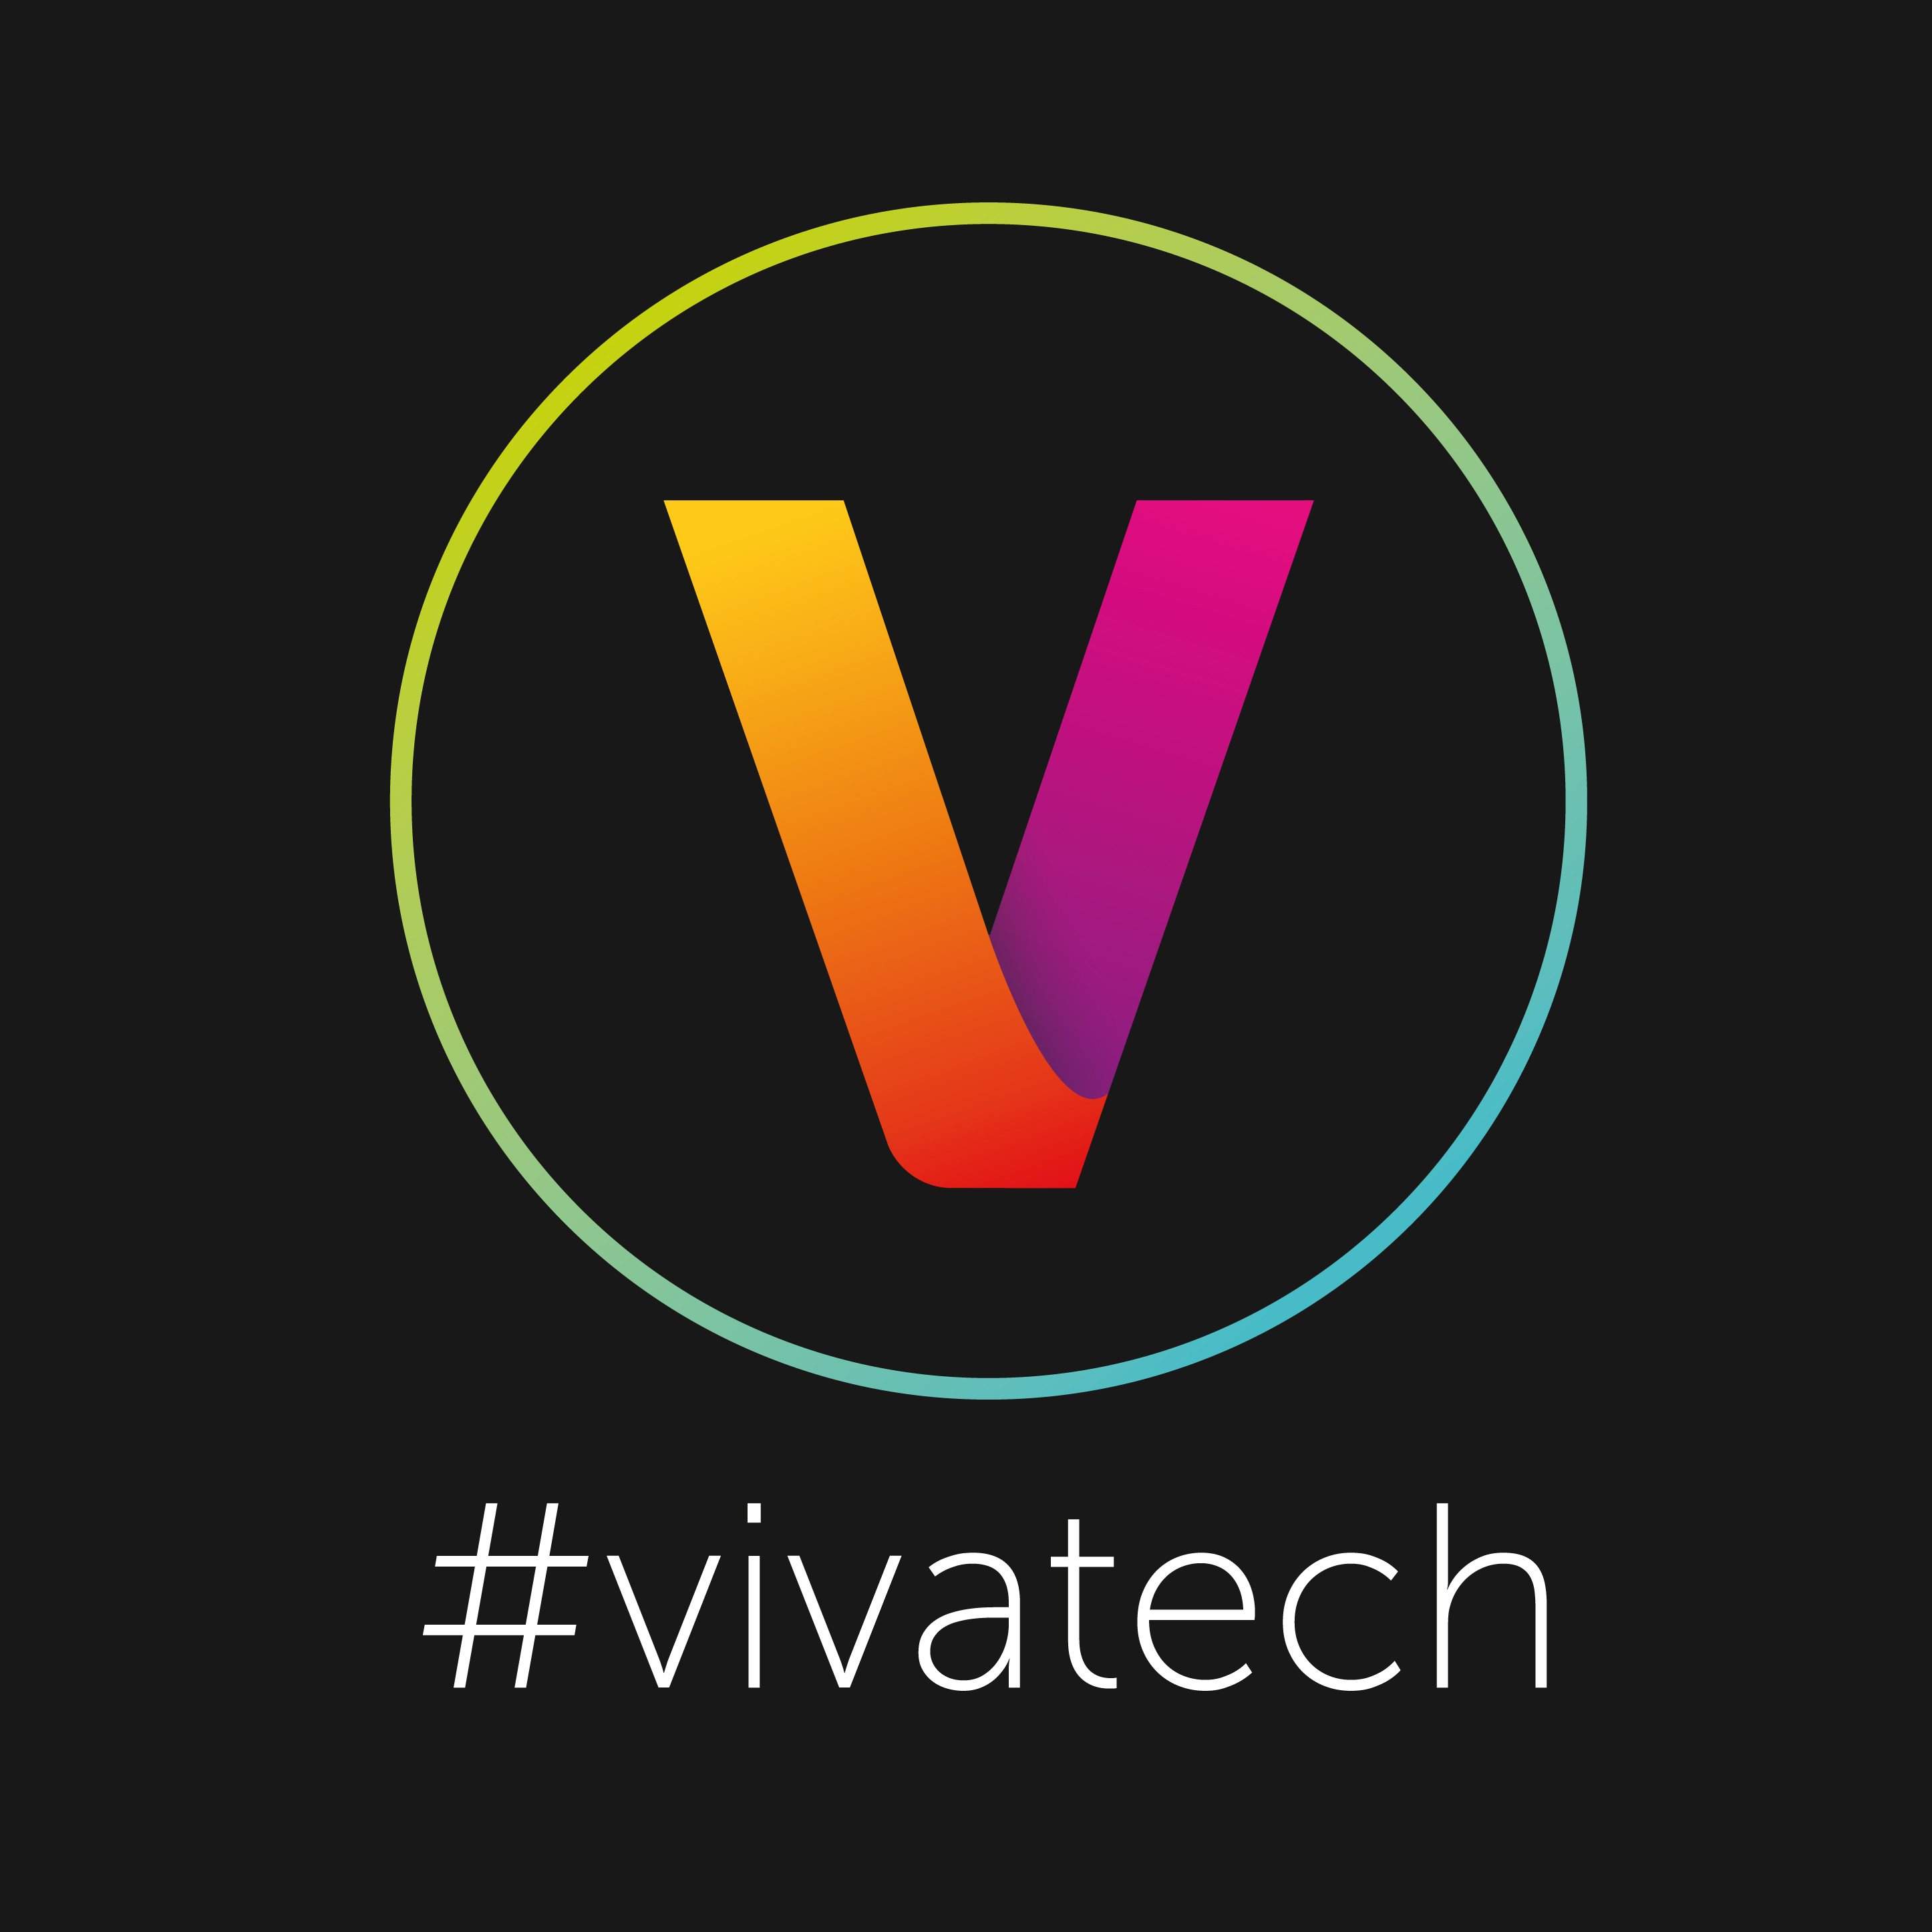 Viva Technology 2016 Virtual Reality Scale1 Portal